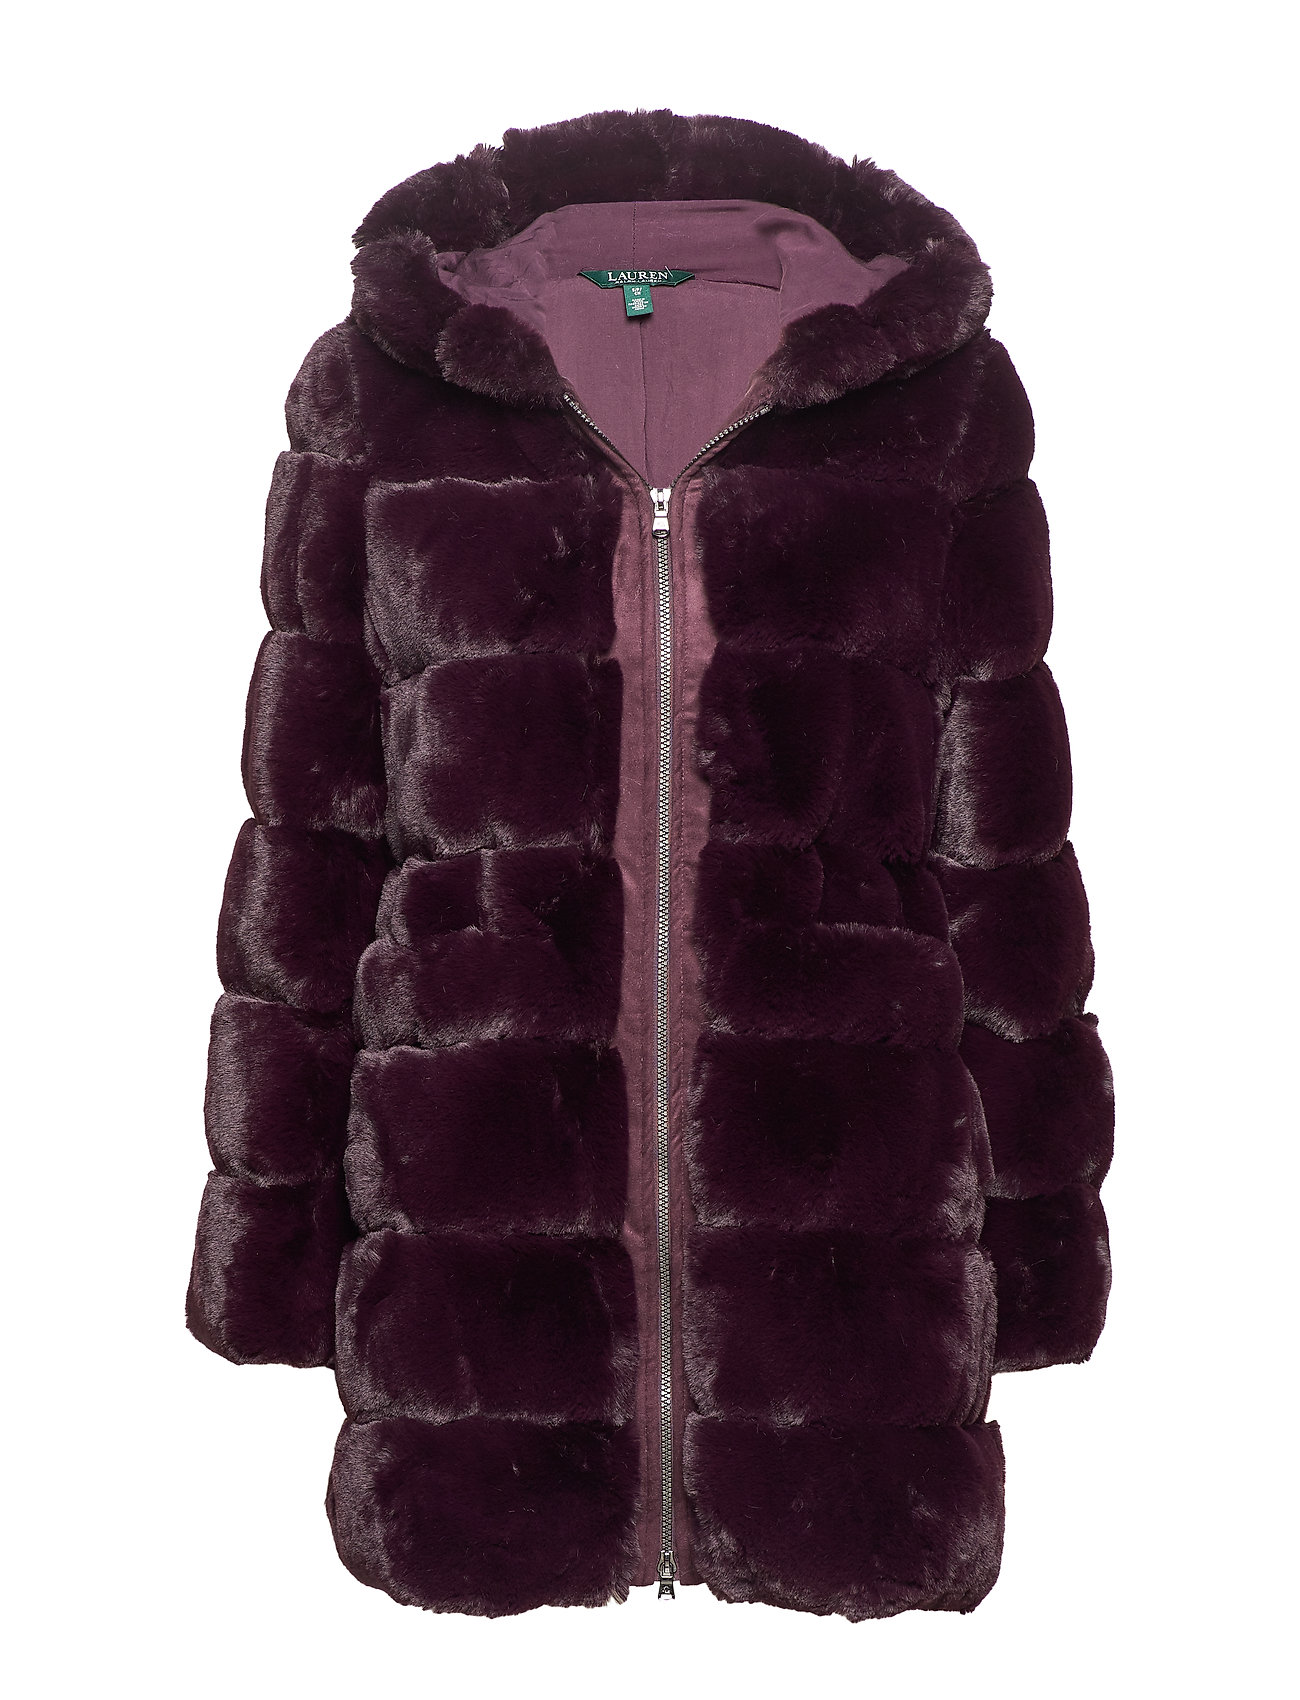 ralph lauren fur coat